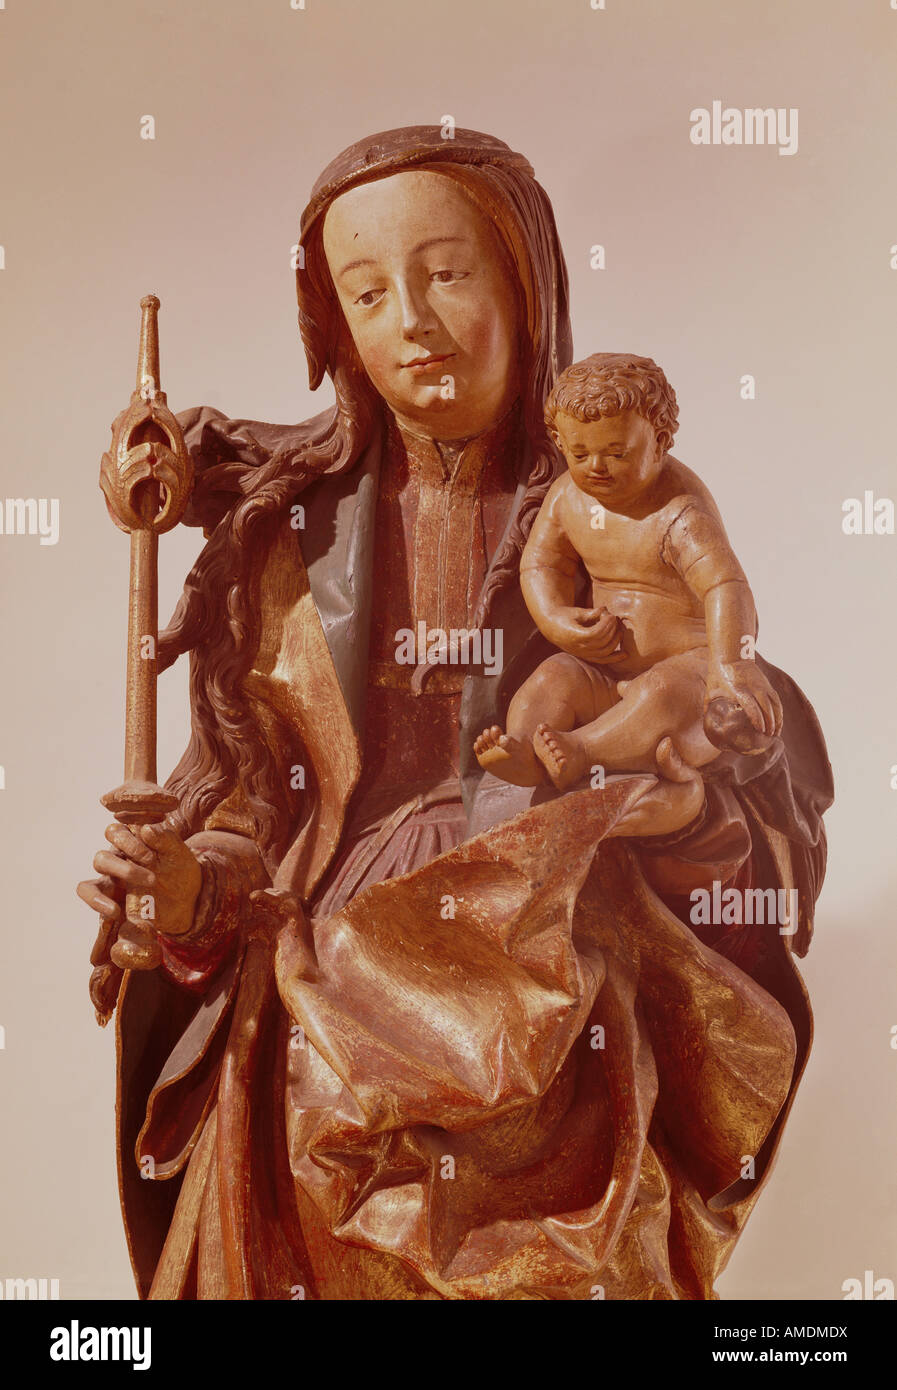 Bildende Kunst, Leinberger, Hans, (um 1475/1480-1531), Skulptur, Madonna, Detail, Holz, ca. 1520, Diözesanmuseum, Brixen, Italien, Artist's Urheberrecht nicht geklärt zu werden. Stockfoto